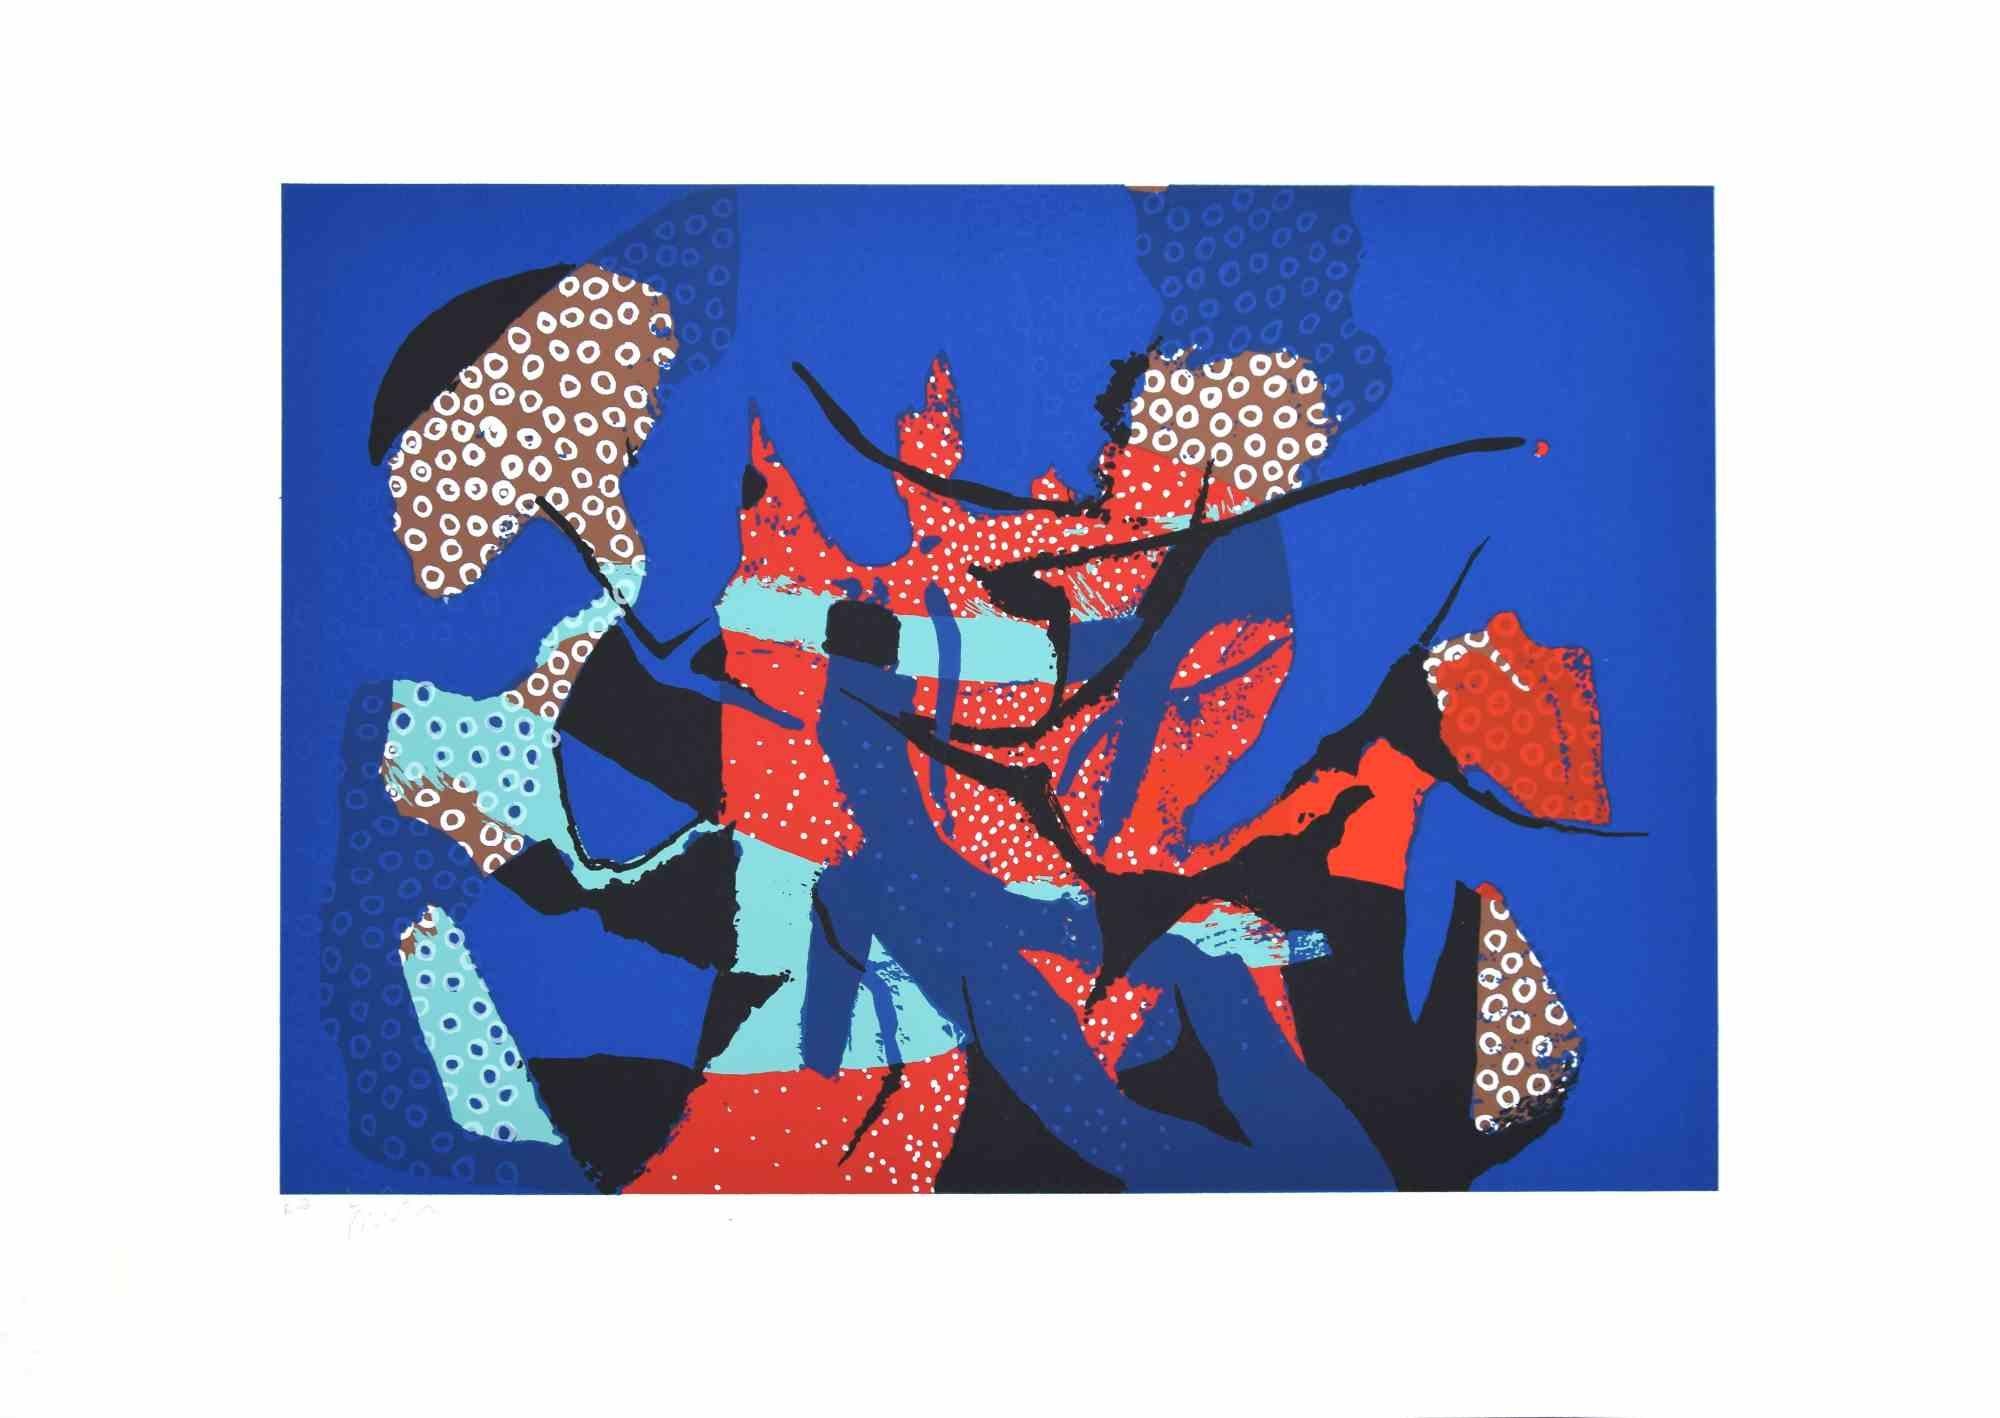 Composition abstraite est une sérigraphie colorée sur papier, réalisée dans les années 1970 par l'artiste italien  Wladimiro Tulli.
Signé à la main en bas à droite. Épreuve d'artiste.

Une belle œuvre d'art représentant une composition abstraite à